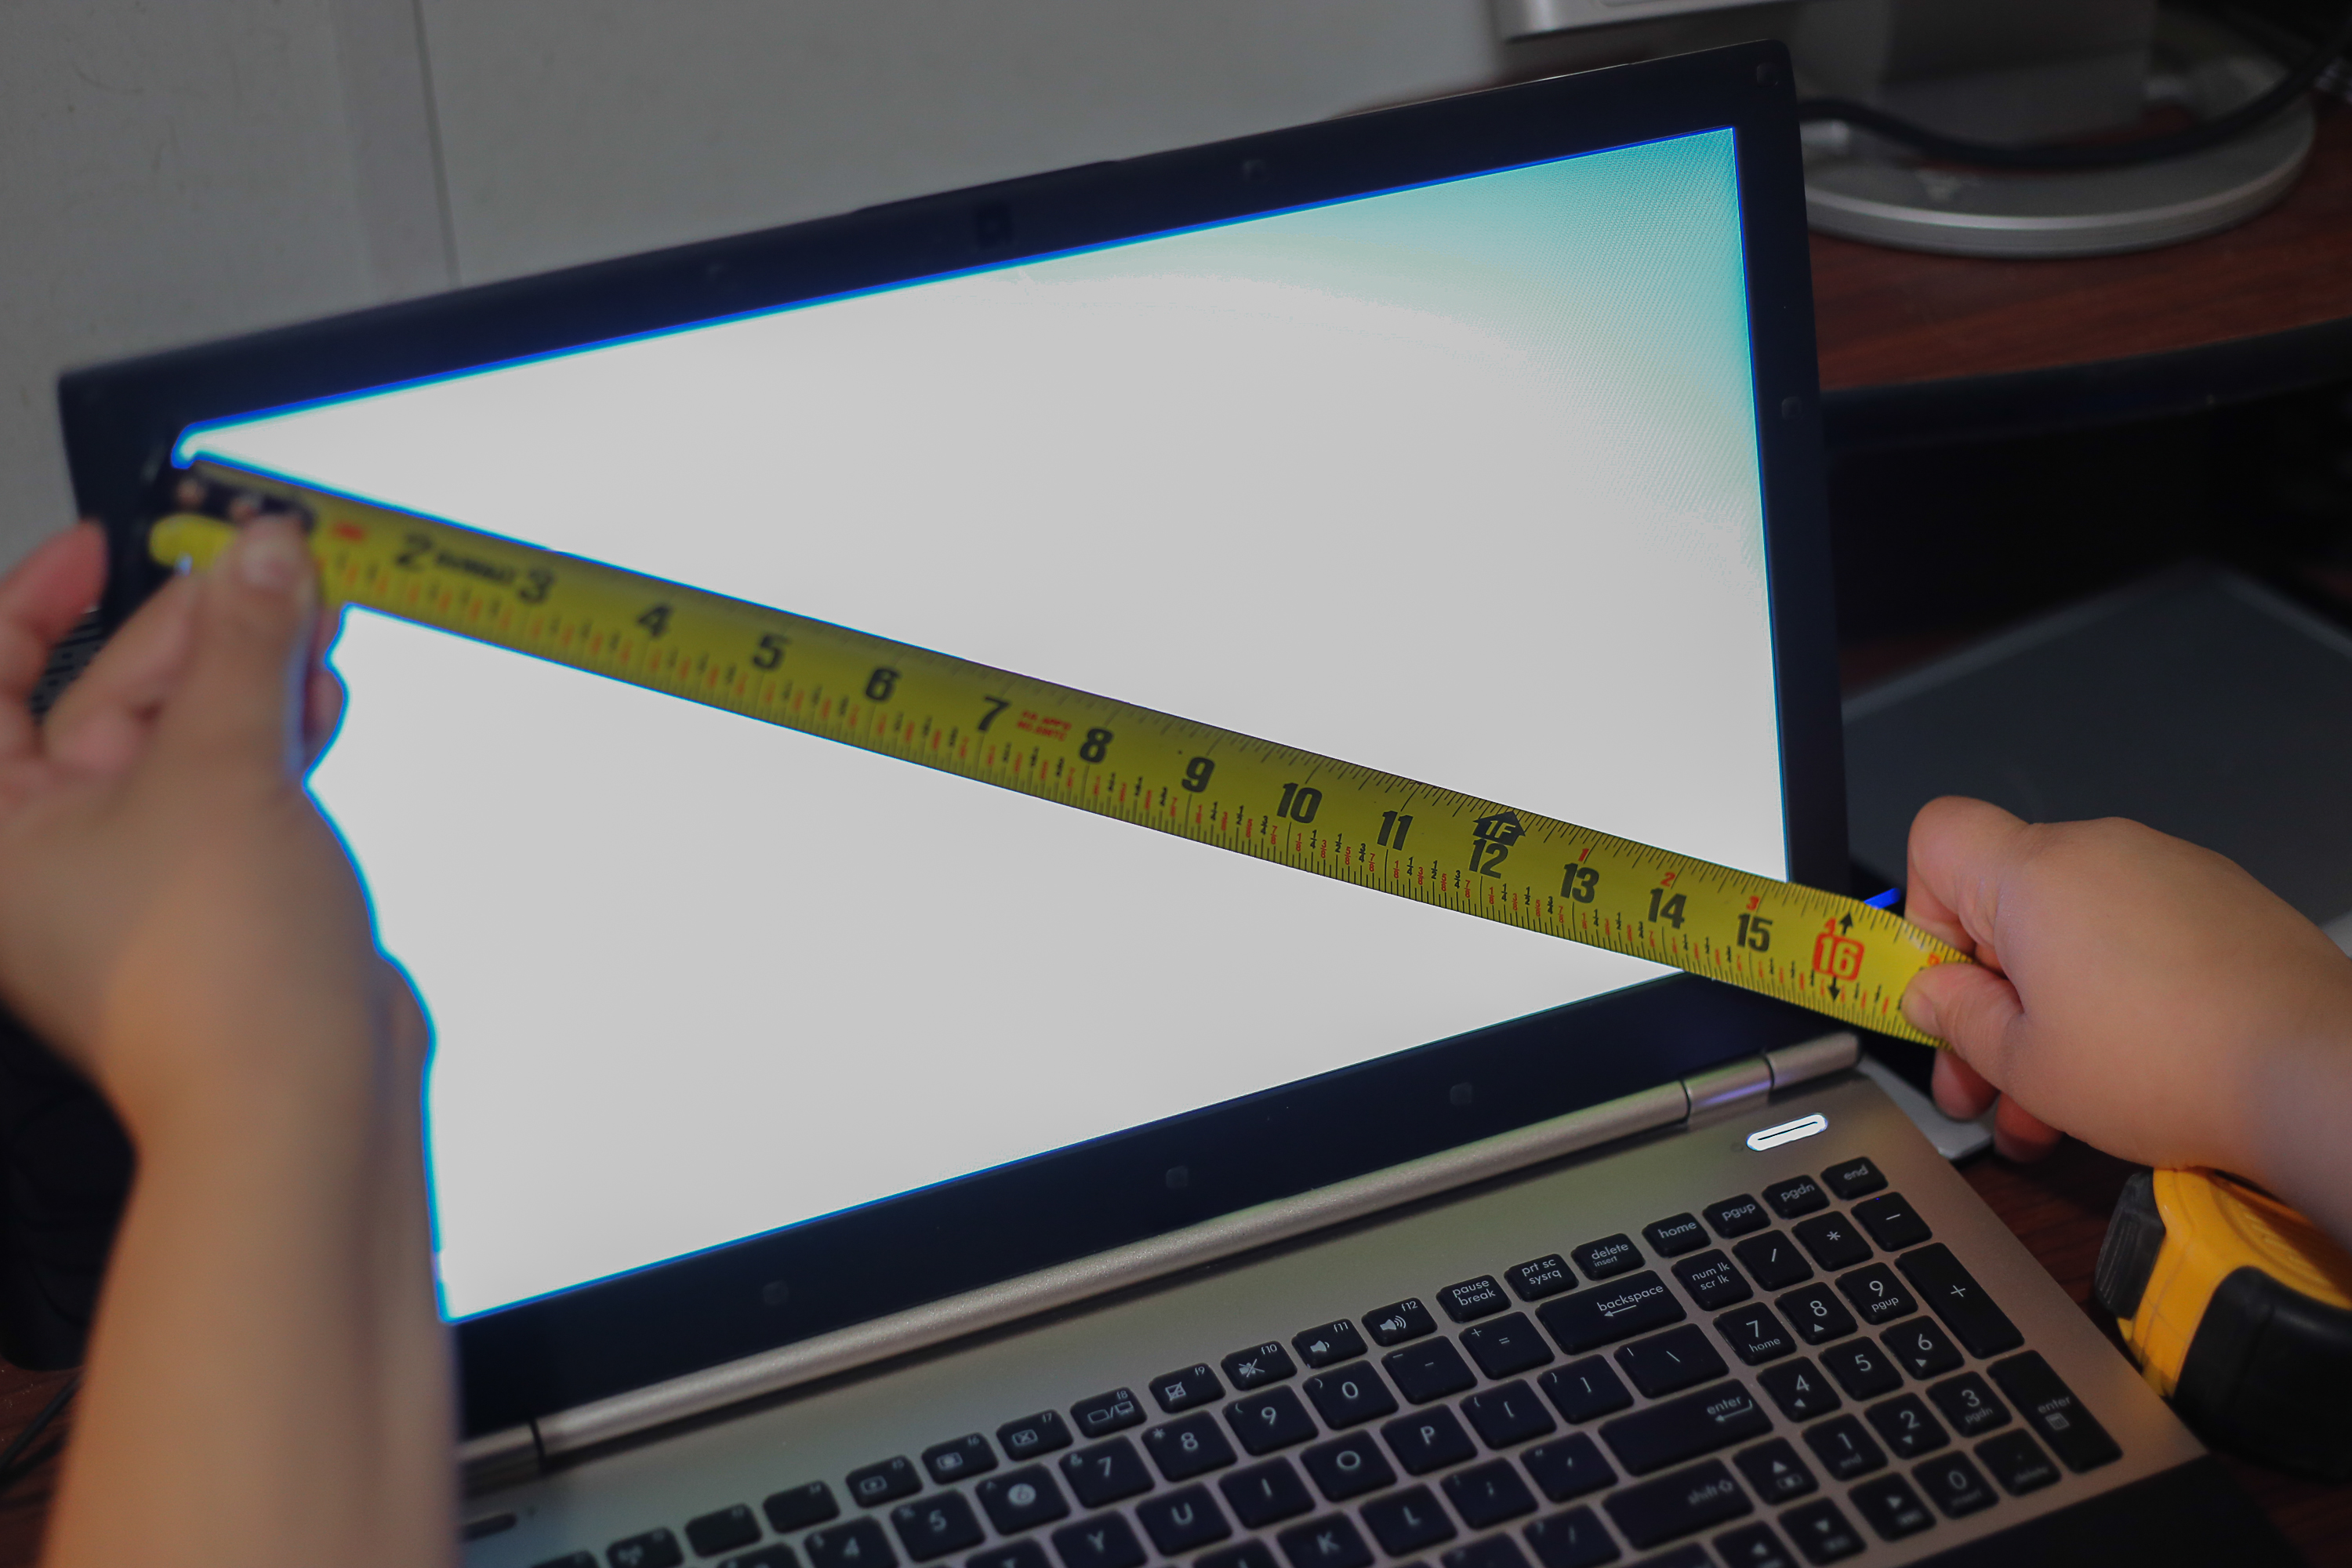 Диагональ экрана дюймы 15.6. Экран ноутбука 15.6 дюймов в сантиметрах. Экран ноутбука 14 дюймов в сантиметрах. Ноутбук диагональ 14 дюймов в сантиметрах. Ноутбук асус 15.6 дюймов размер в см.